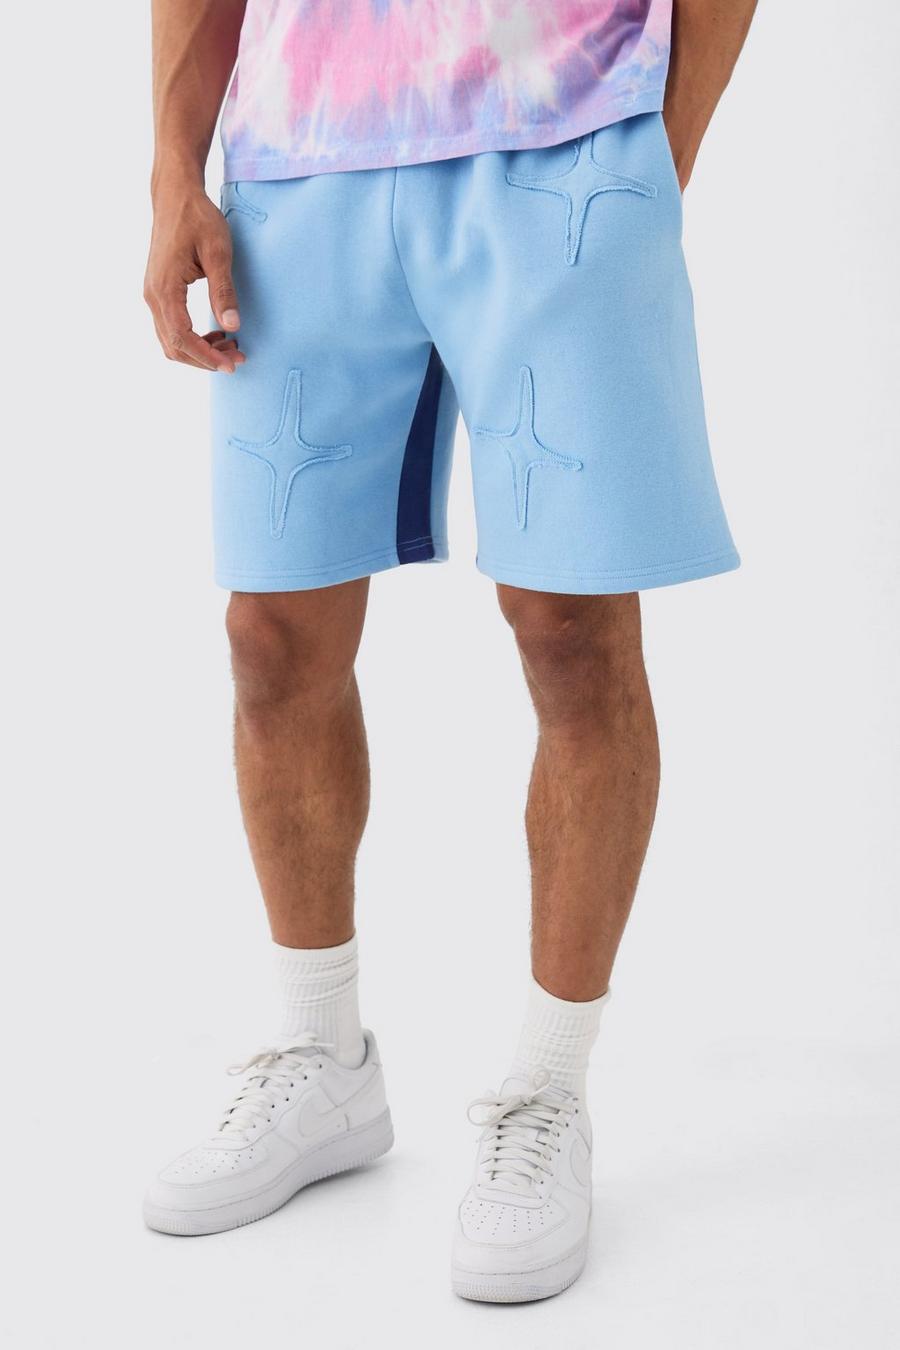 Pantaloncini rilassati blu con applique a effetto grezzo, Light blue